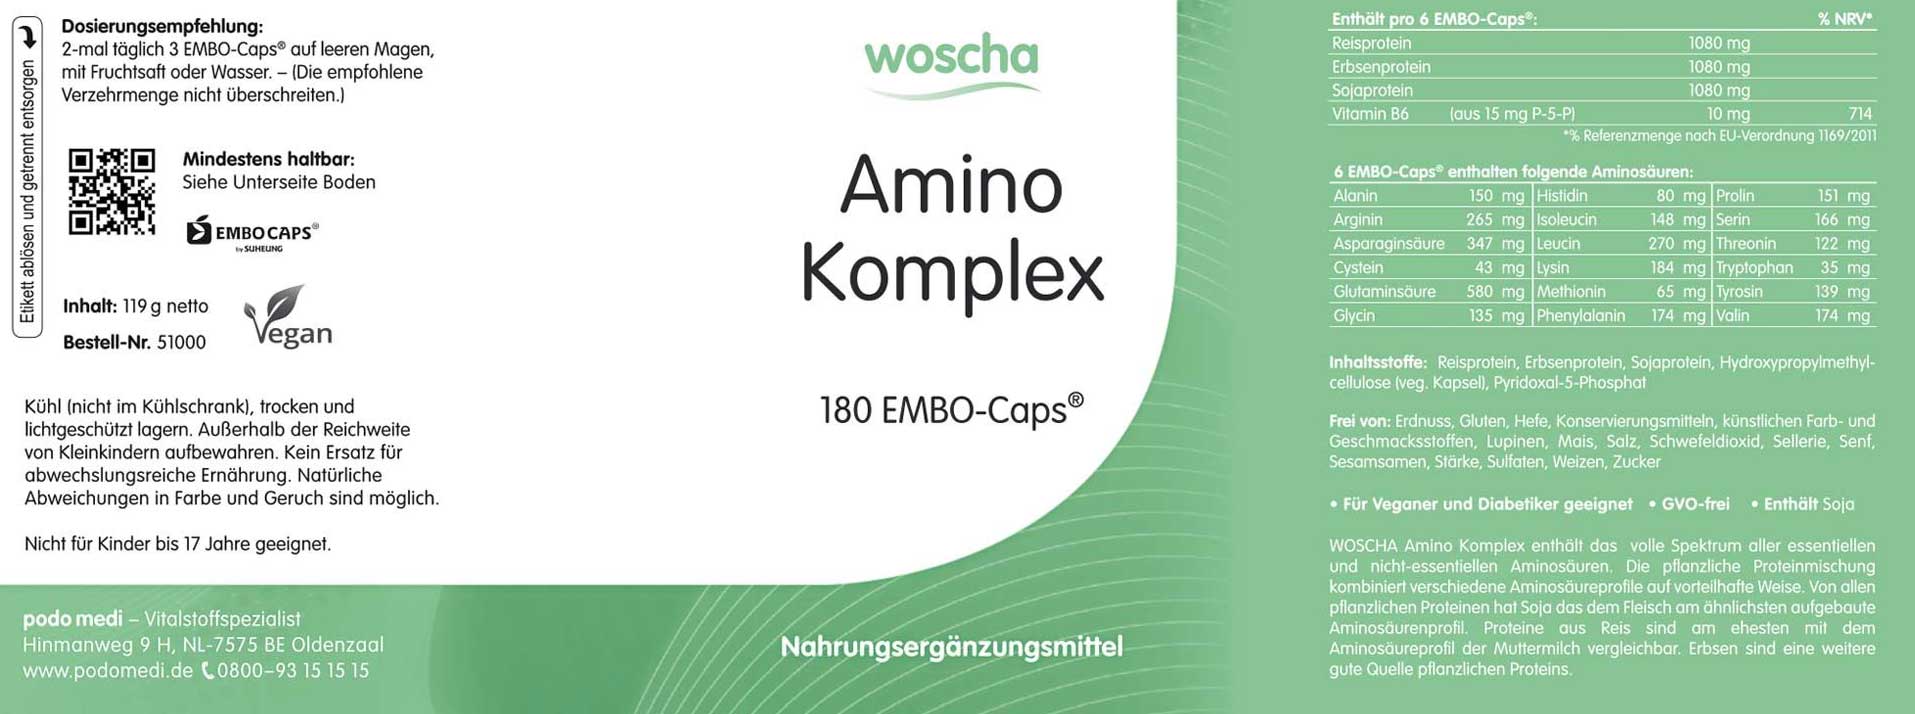 Woscha Amino Komplex von podo medi beinhaltet 180 Kapseln Etikett